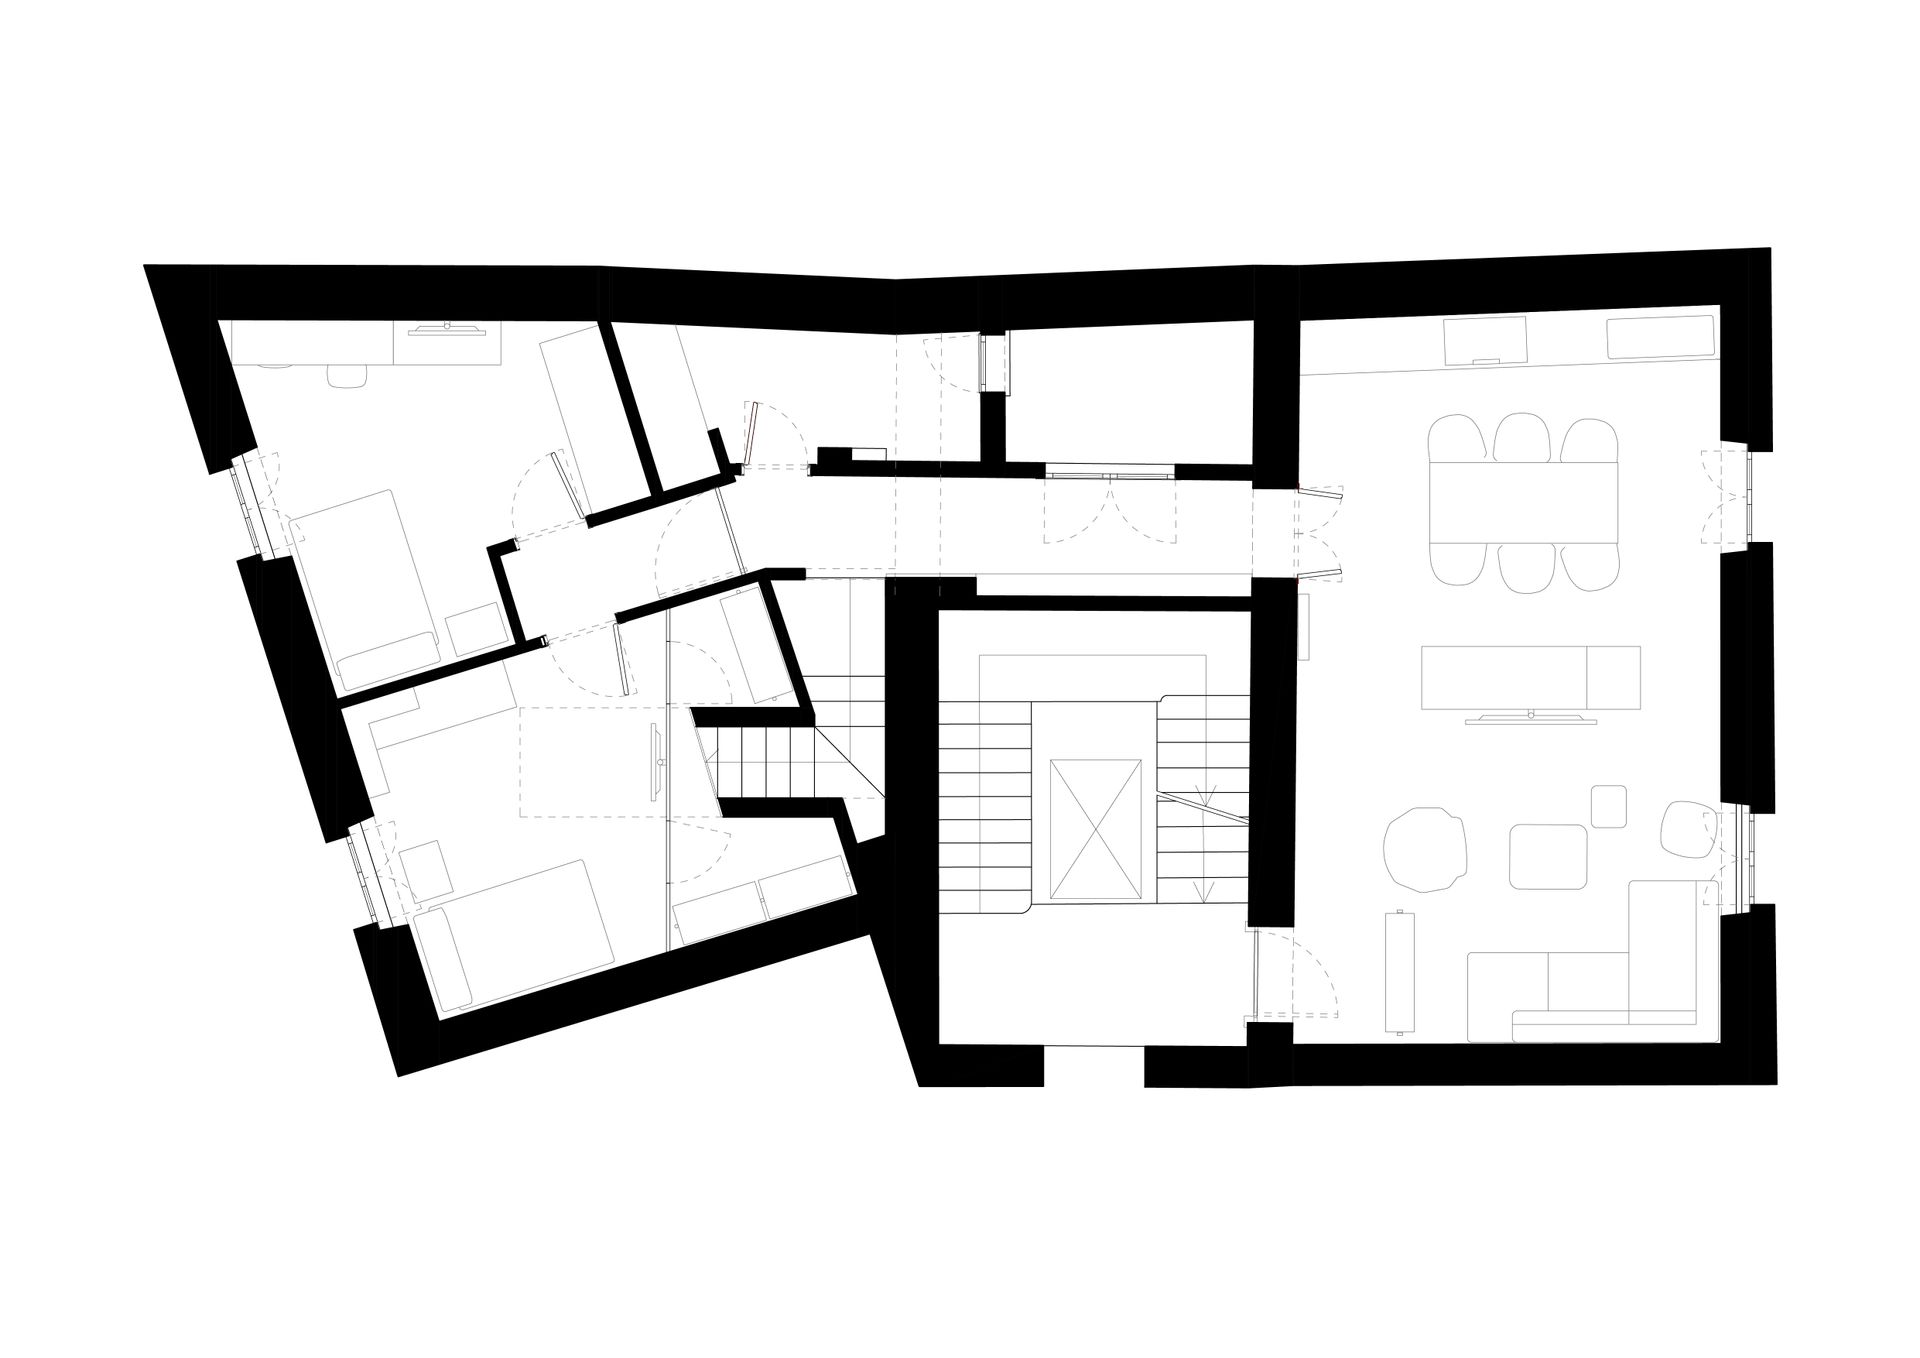 Progetto interior design, ristrutturazione appartamento attico Bergamo, Milano, Lago di Como, Londra, New York, Parigi. Officina Magisafi architettura design - pianta